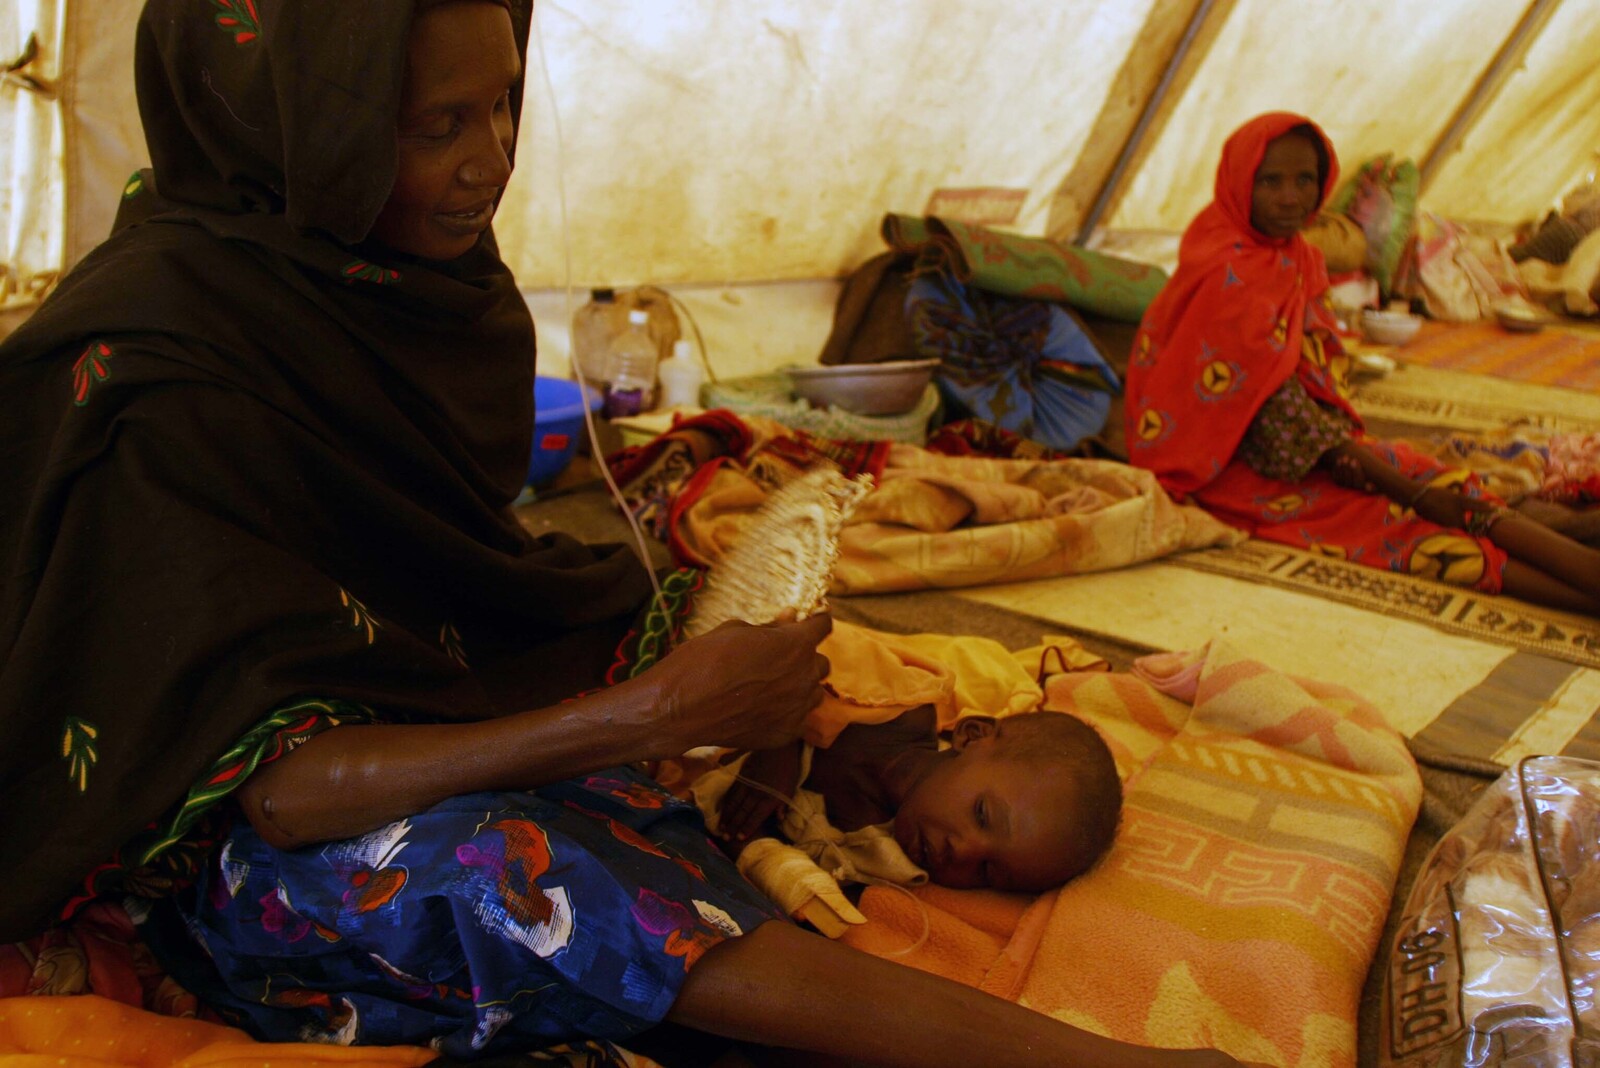 Die Mütter- und Kindersterblichkeit steigt nach großen Katastrophen meist stark an. Eine junge Mutter sitzt mit ihrem Baby in einem Zentrum für schwer unterernährte Kinder.